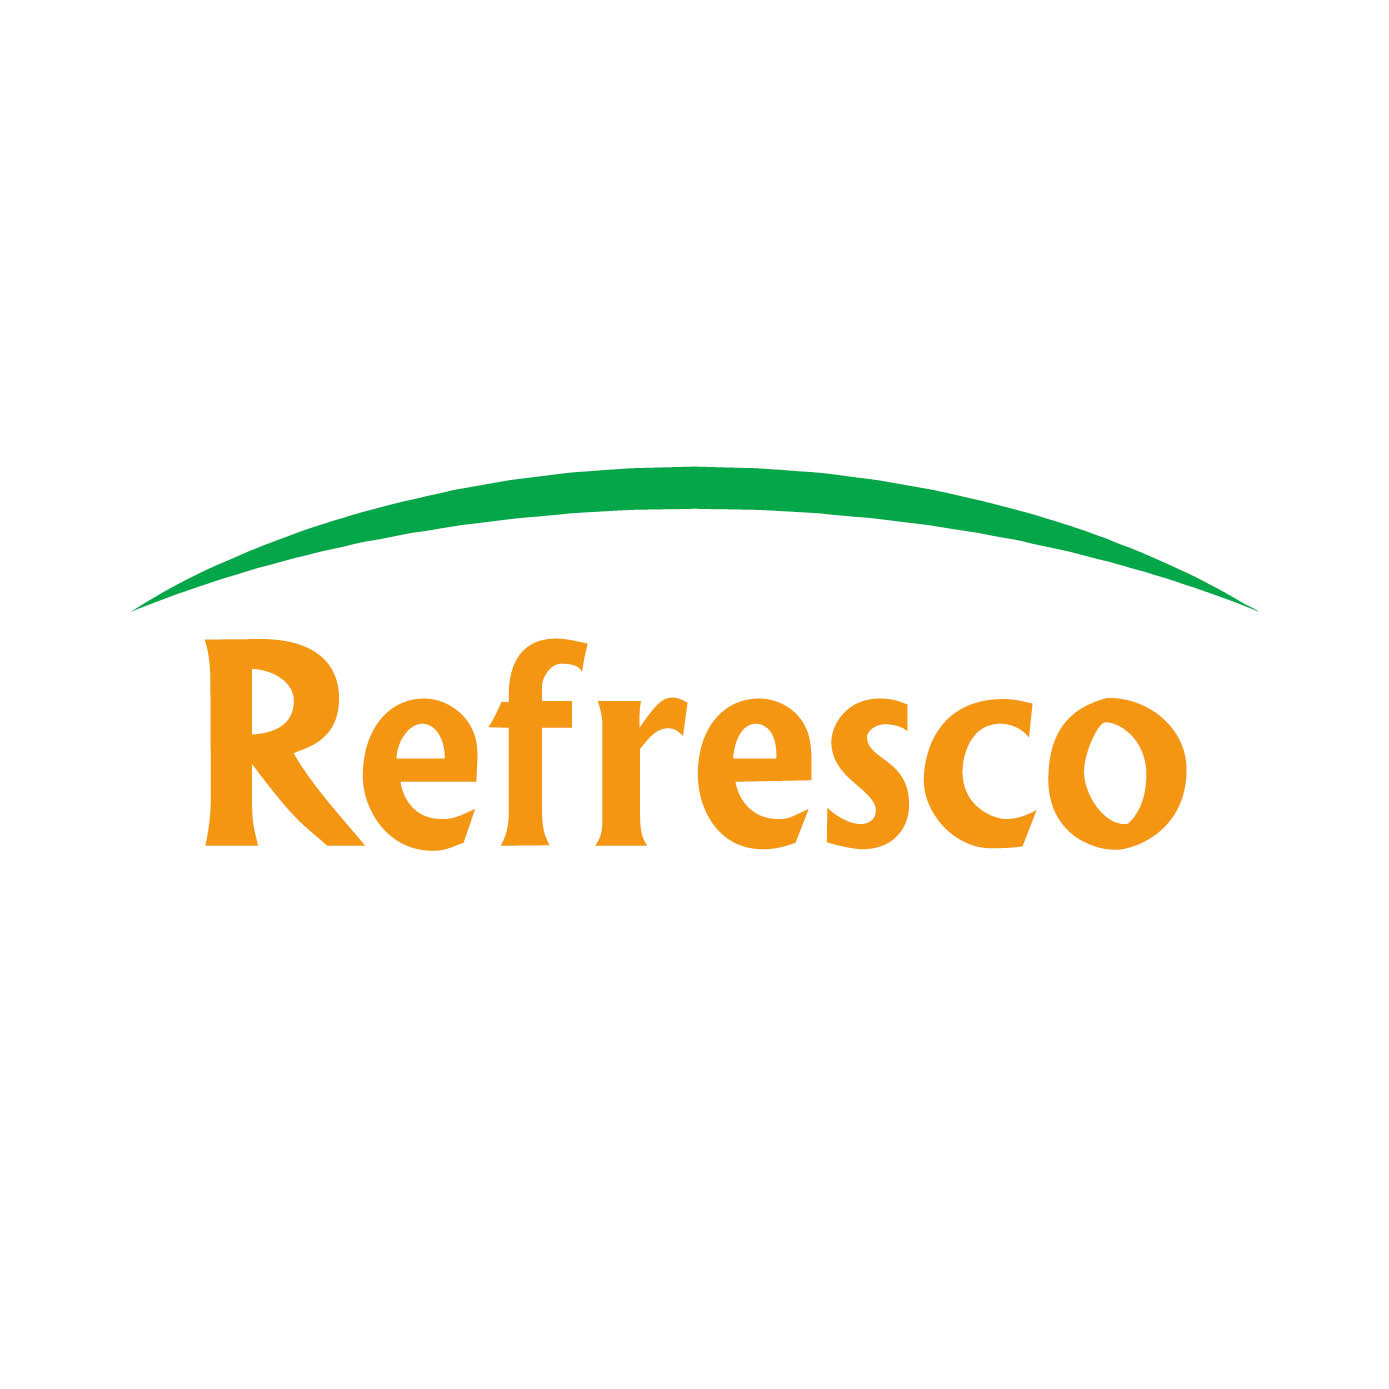 Logo Refresco